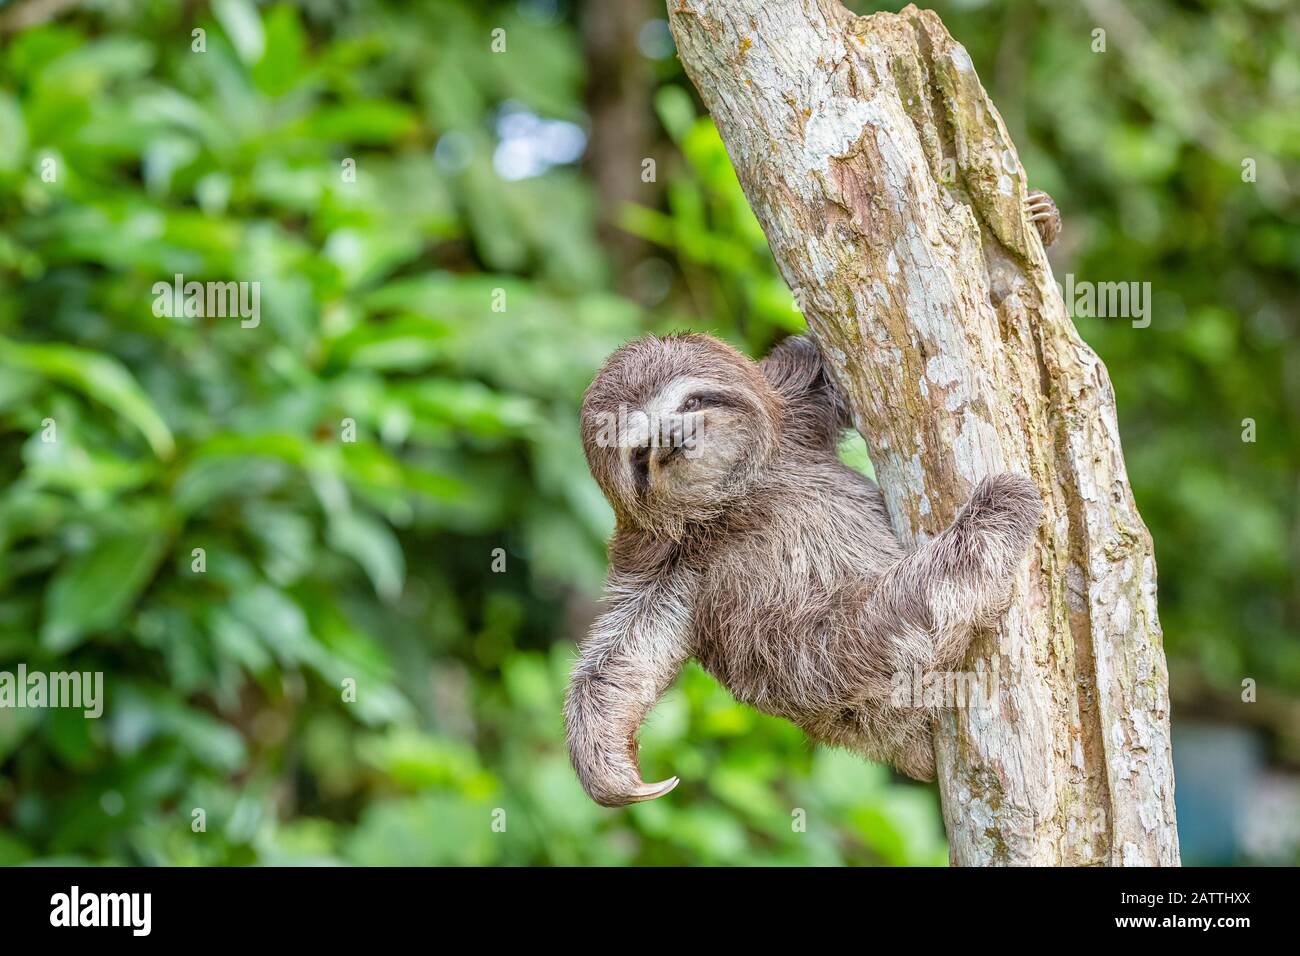 brown-throated sloth, Bradypus variegatus, Loreto, Peru, South America Stock Photo